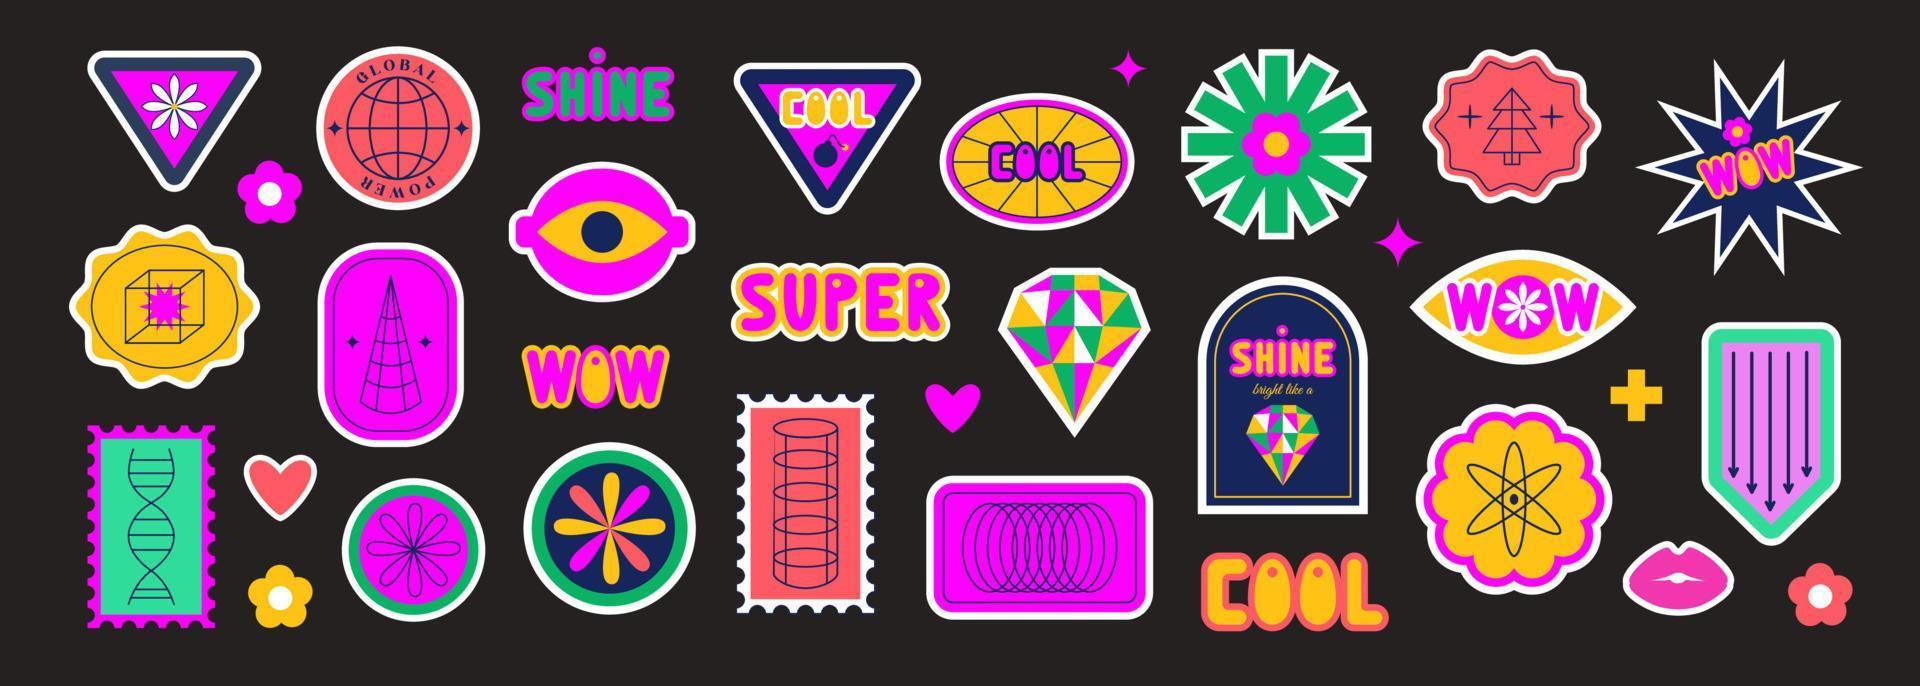 reeks van retro futuristische stickers, etiketten, lappen. jaren 60, jaren 70, jaren 80, jaren 90. y2k. helder levendig zuur kleuren. meetkundig abstract vormen. vector